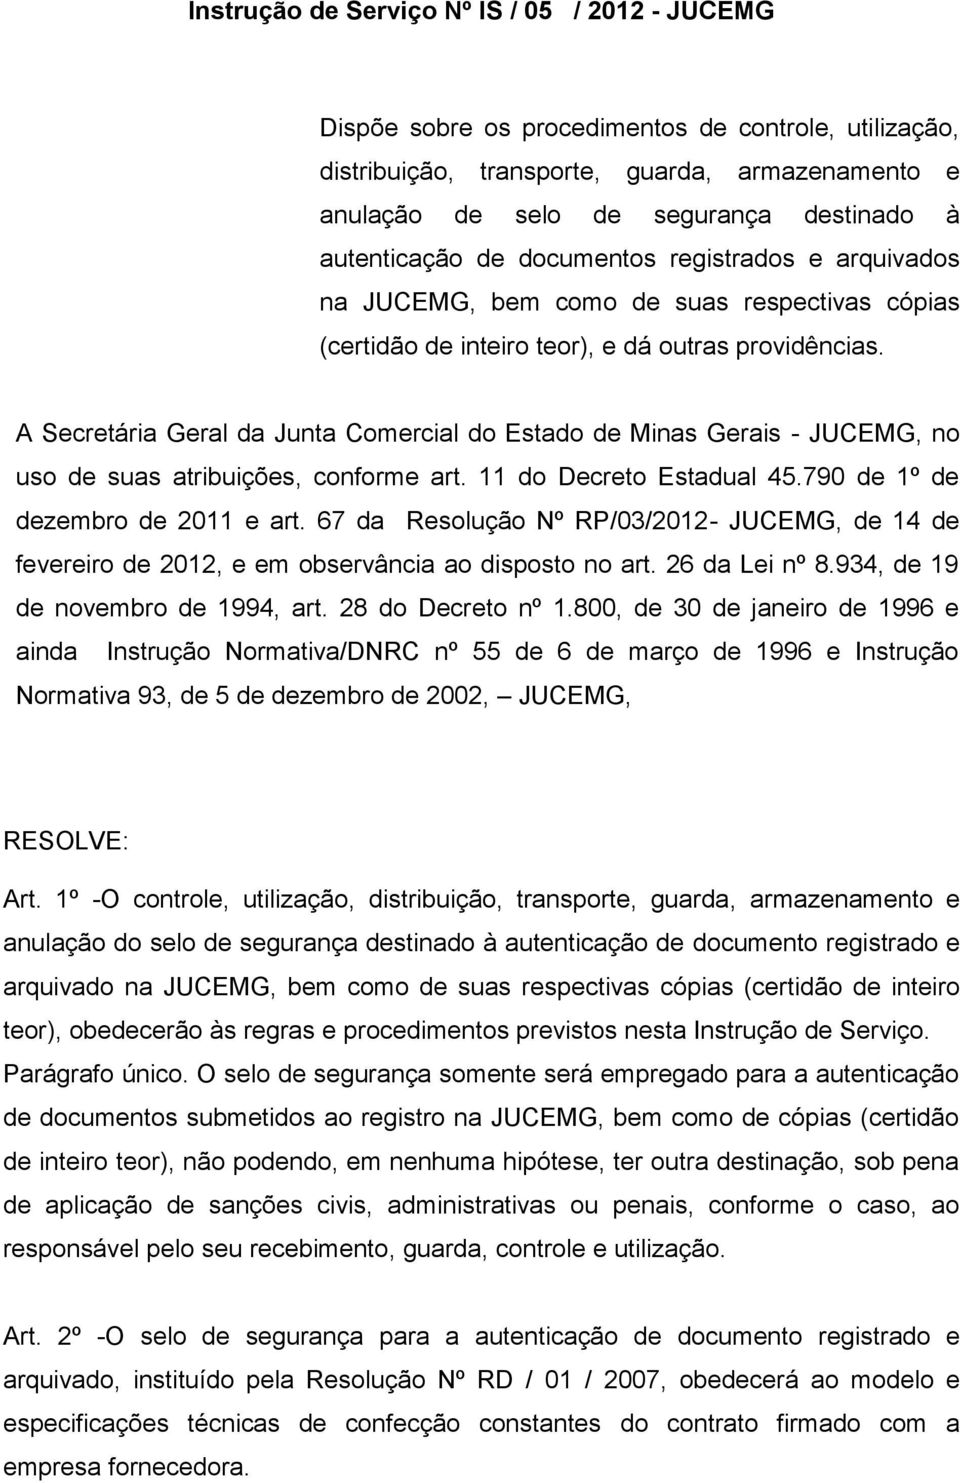 A Secretária Geral da Junta Comercial do Estado de Minas Gerais - JUCEMG, no uso de suas atribuições, conforme art. 11 do Decreto Estadual 45.790 de 1º de dezembro de 2011 e art.